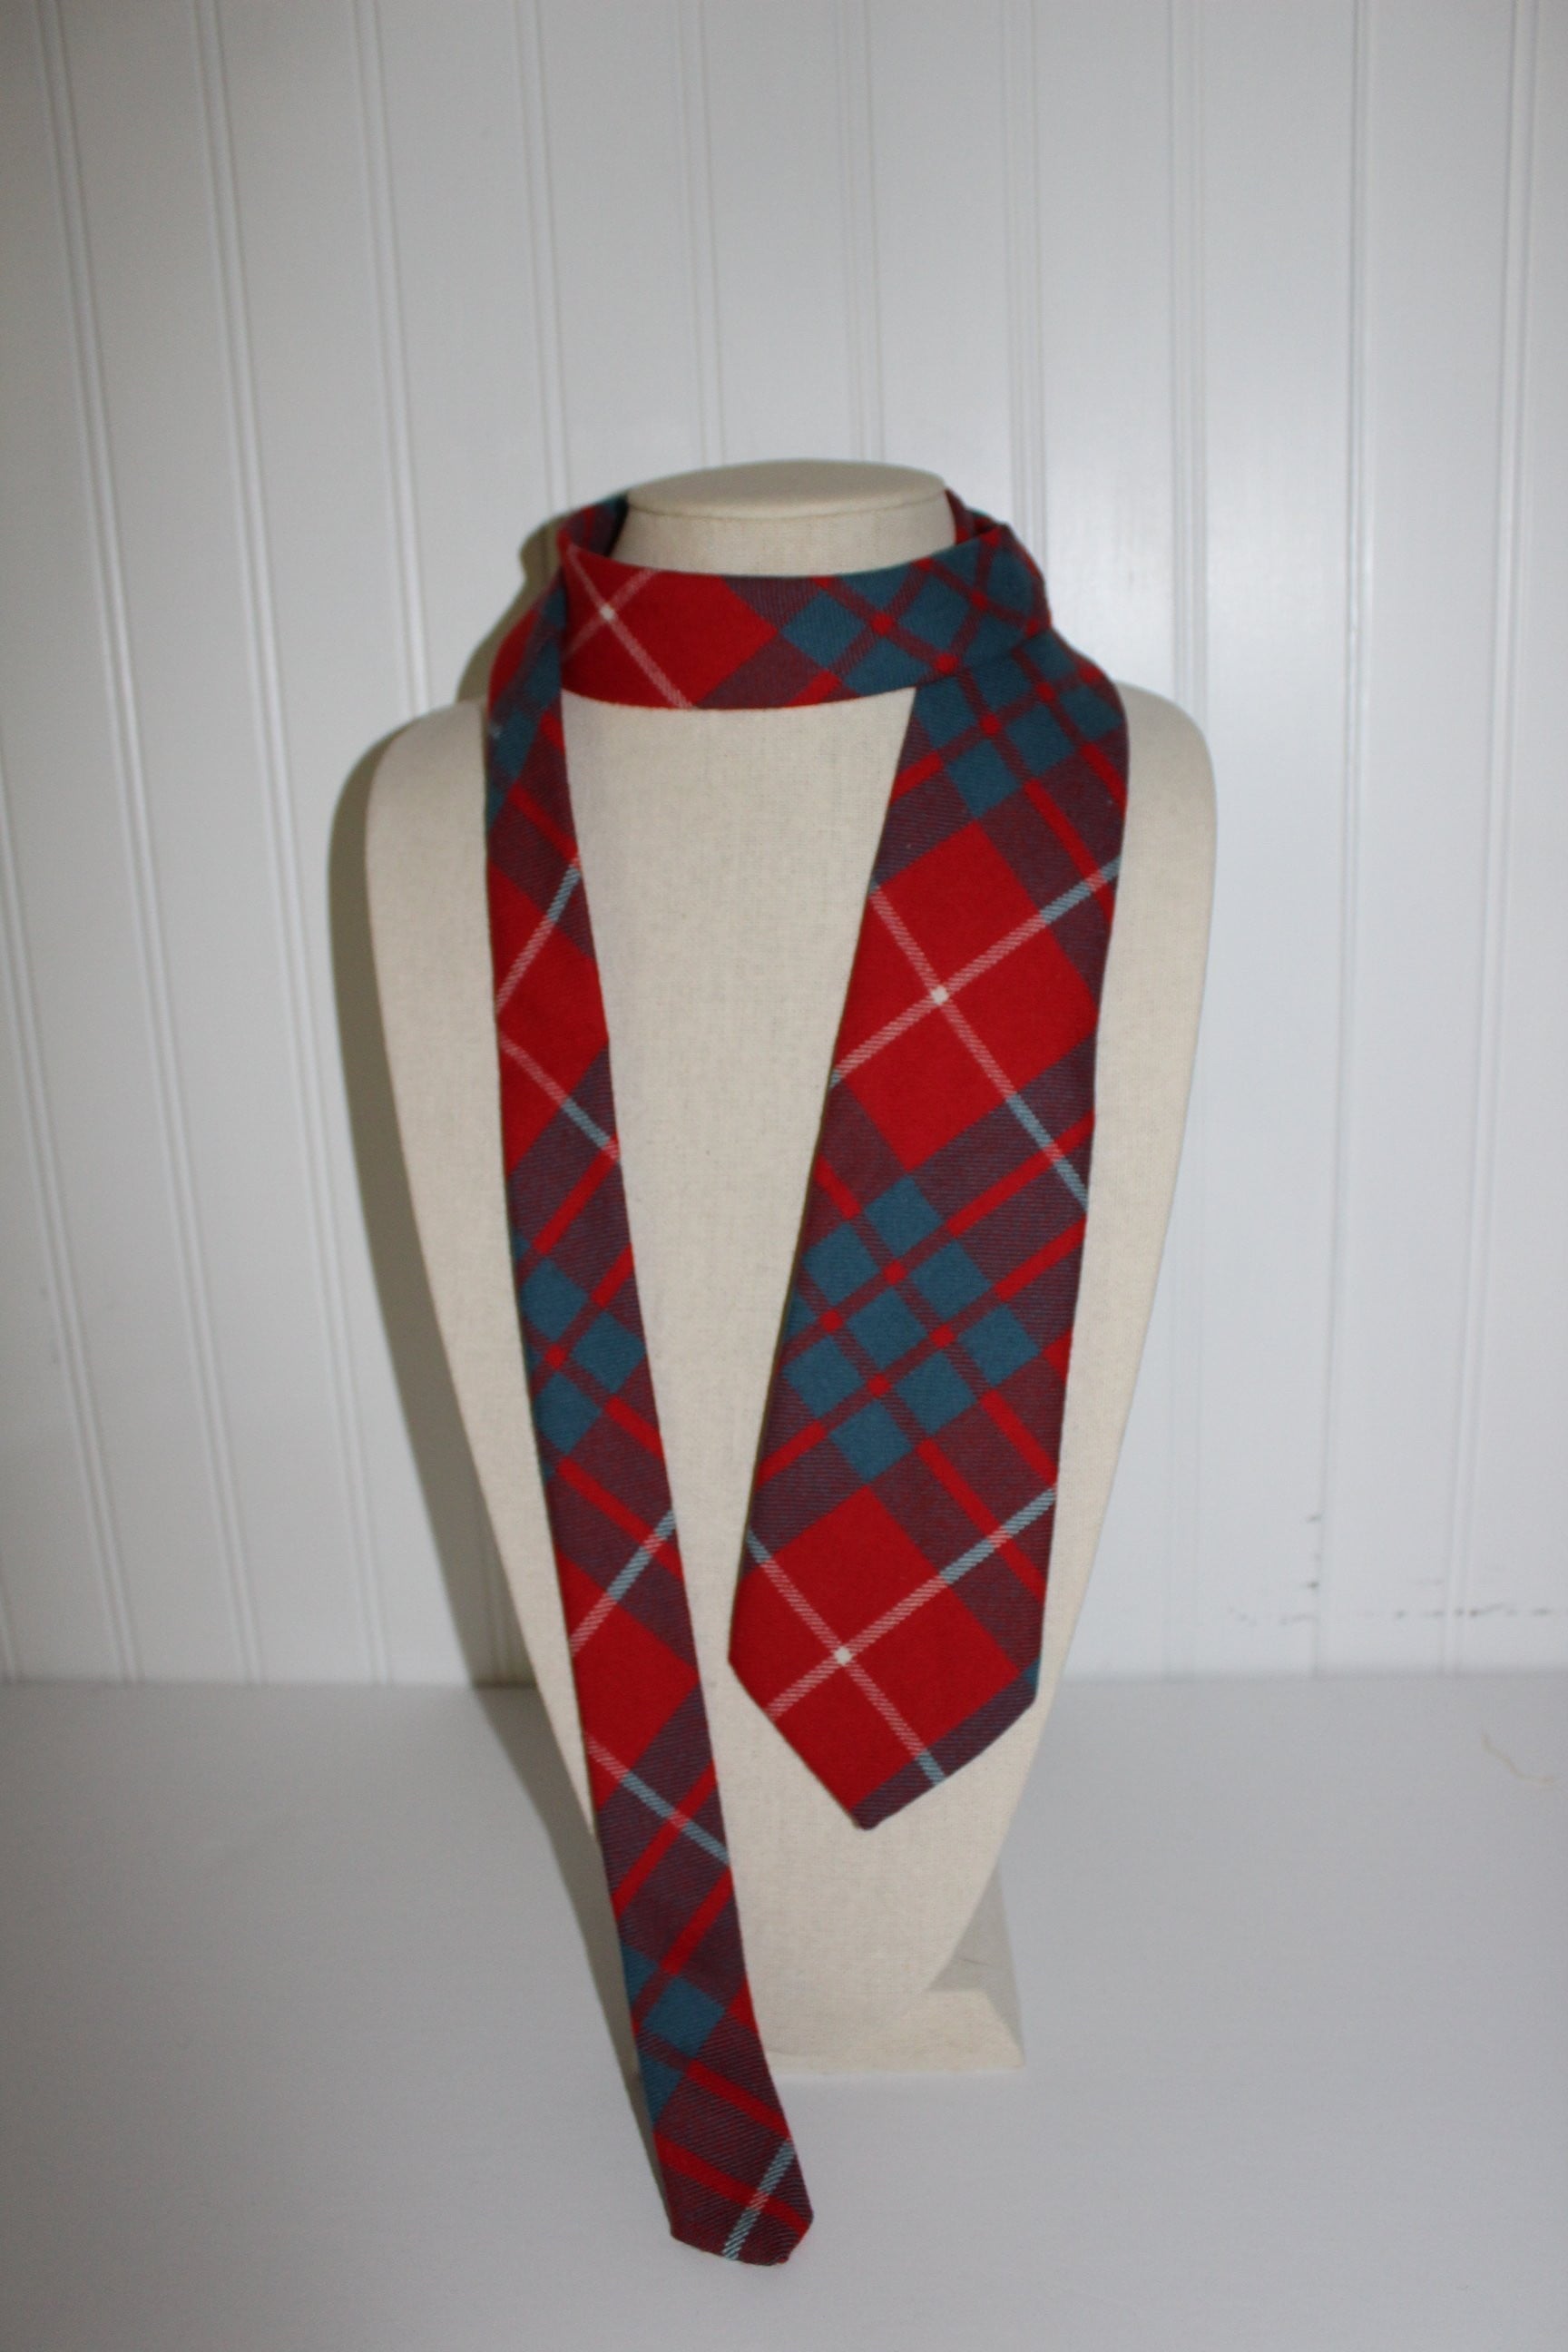 Wool Necktie Red Teal Plaid WB Logo unusual